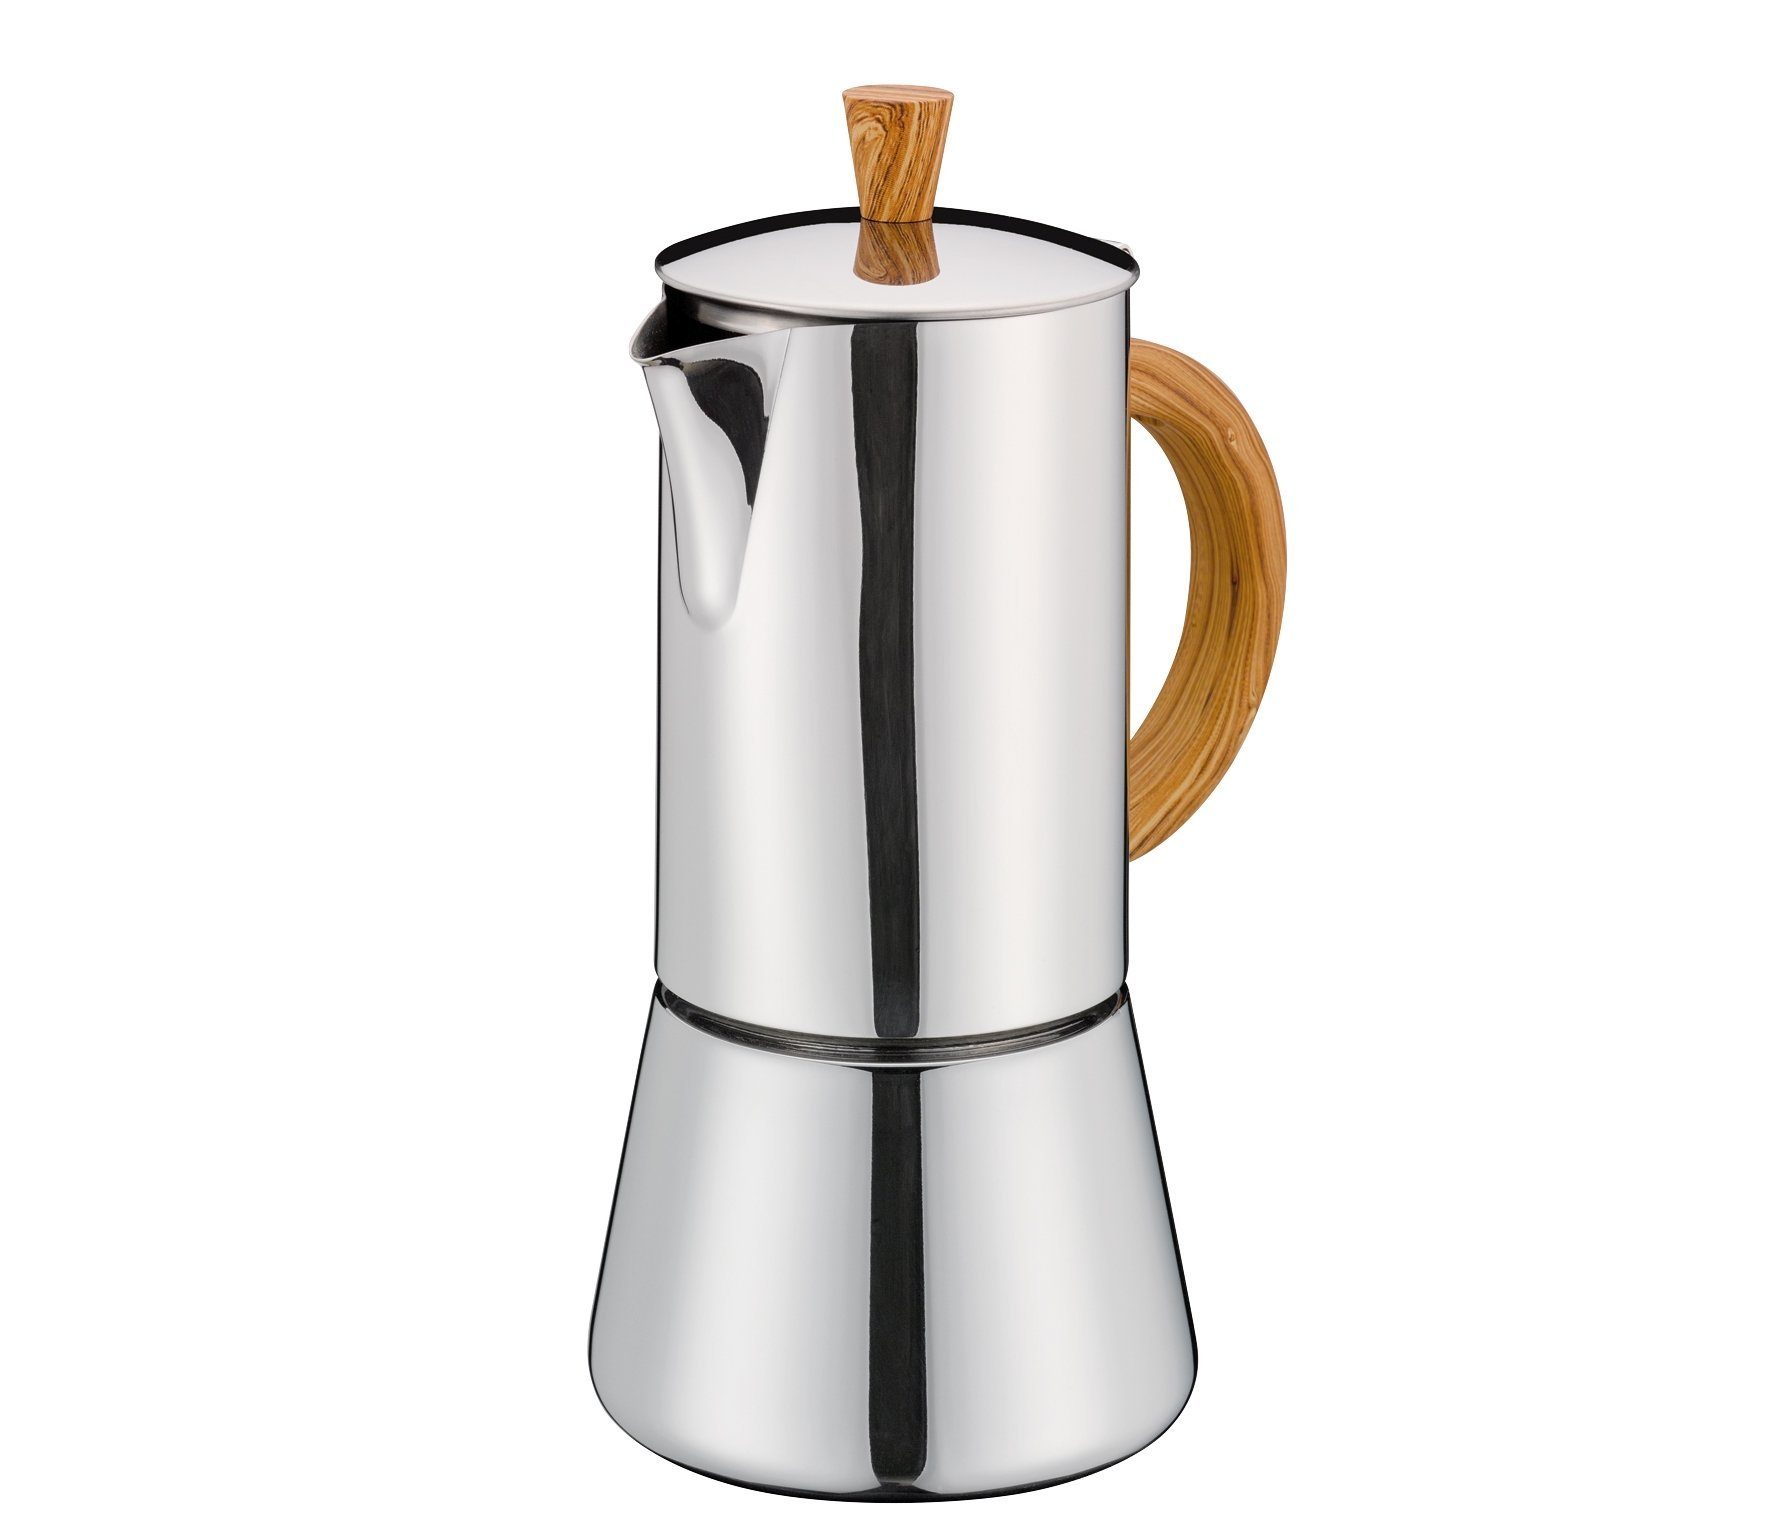 cilio Mokkakocher Espressokocher 6T Espressokocher Induktion Kaffeebereiter Cilio FIGARO